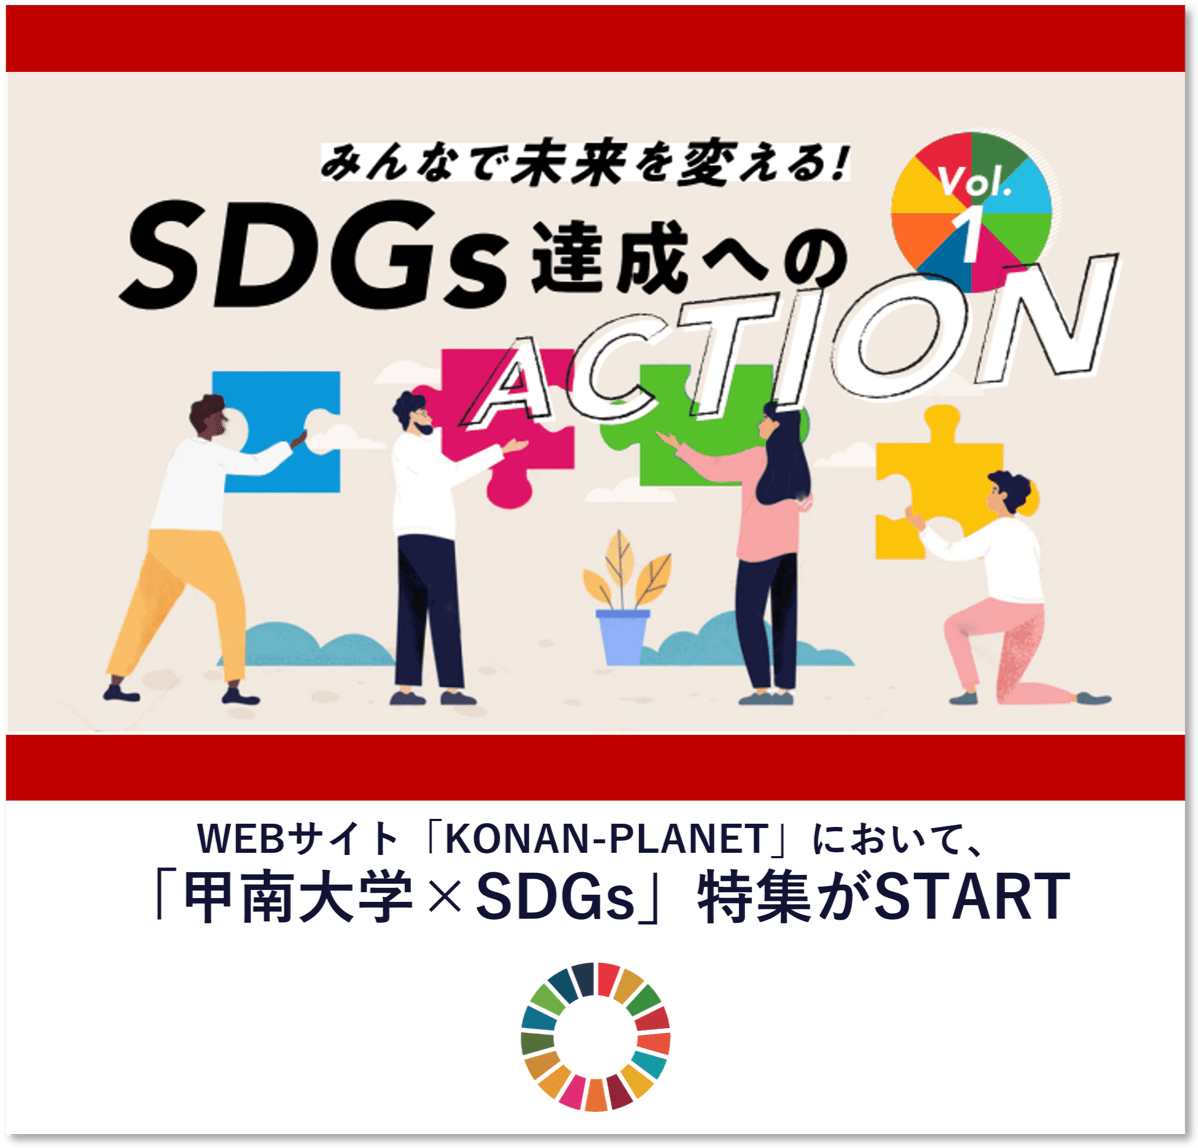 「甲南大学SDGs」特集がスタート